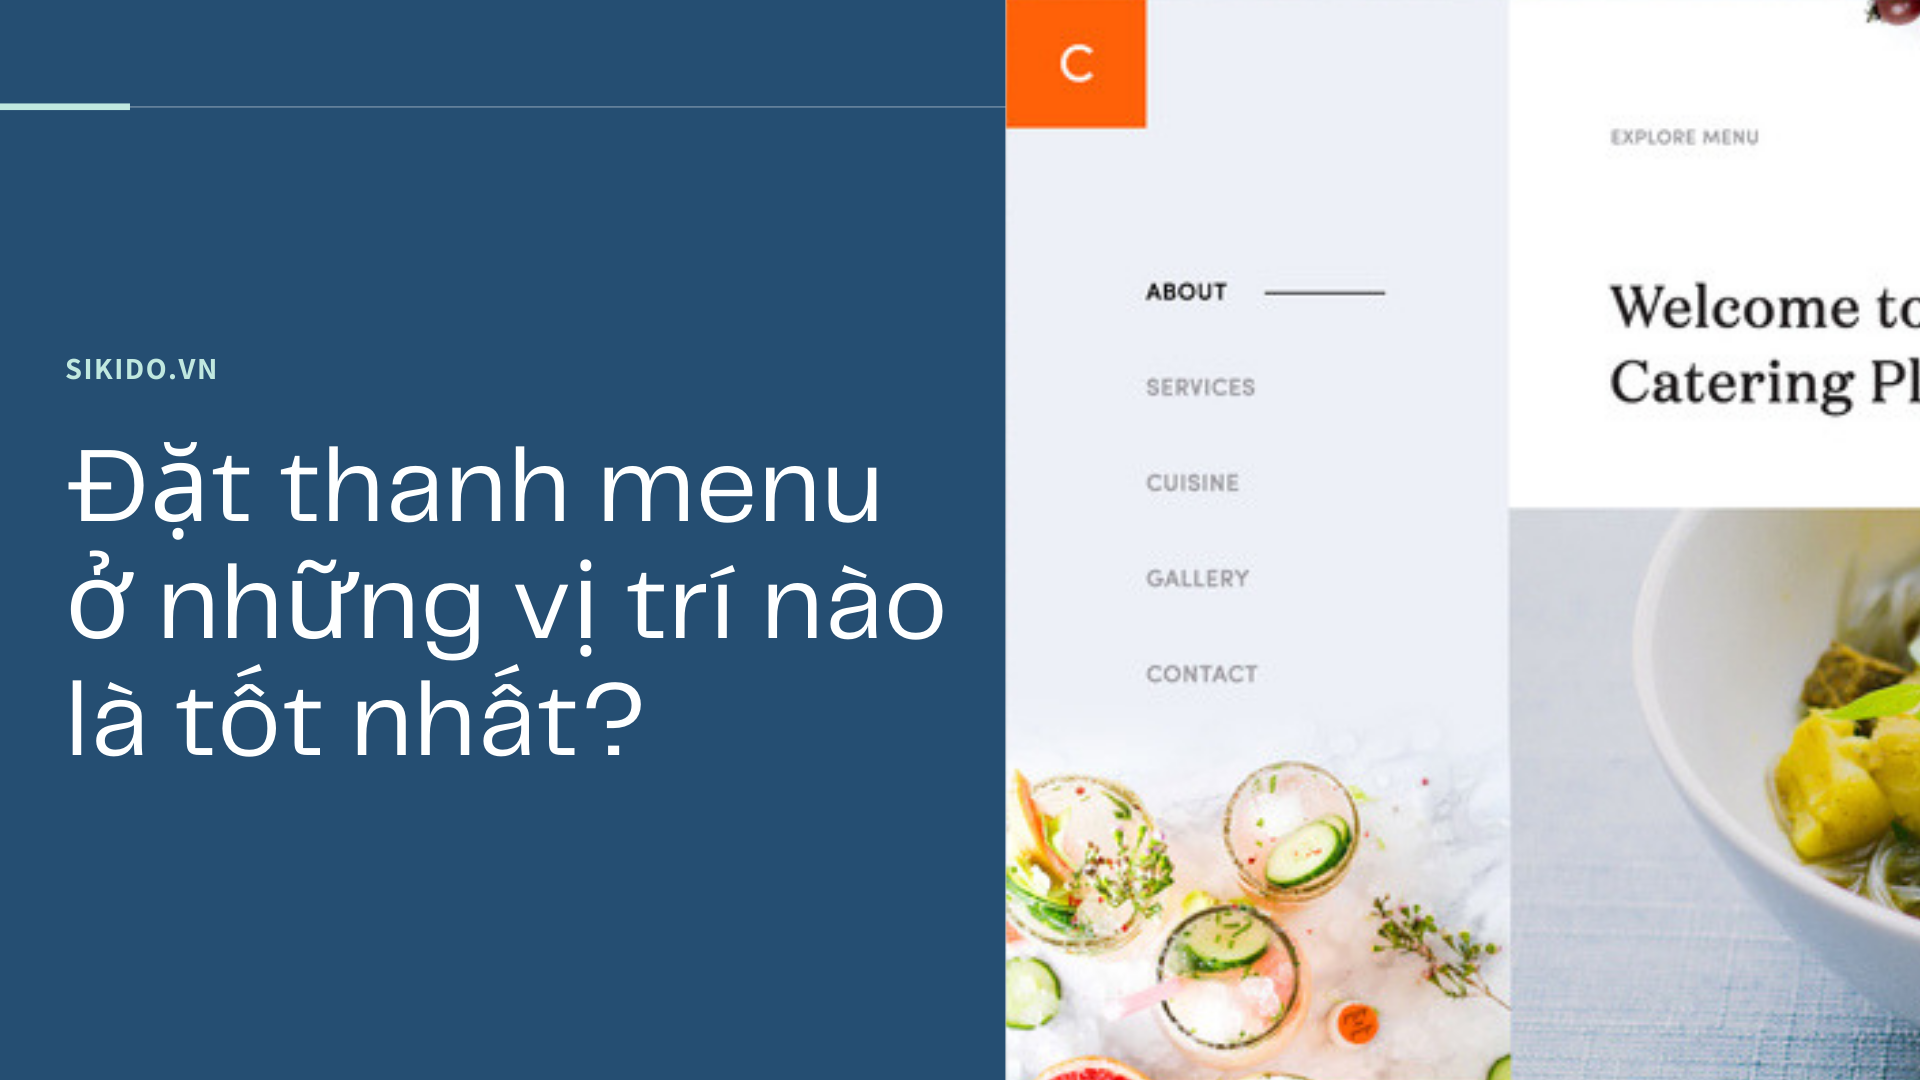 Đặt thanh menu trên website ở những vị trí nào là tốt nhất?